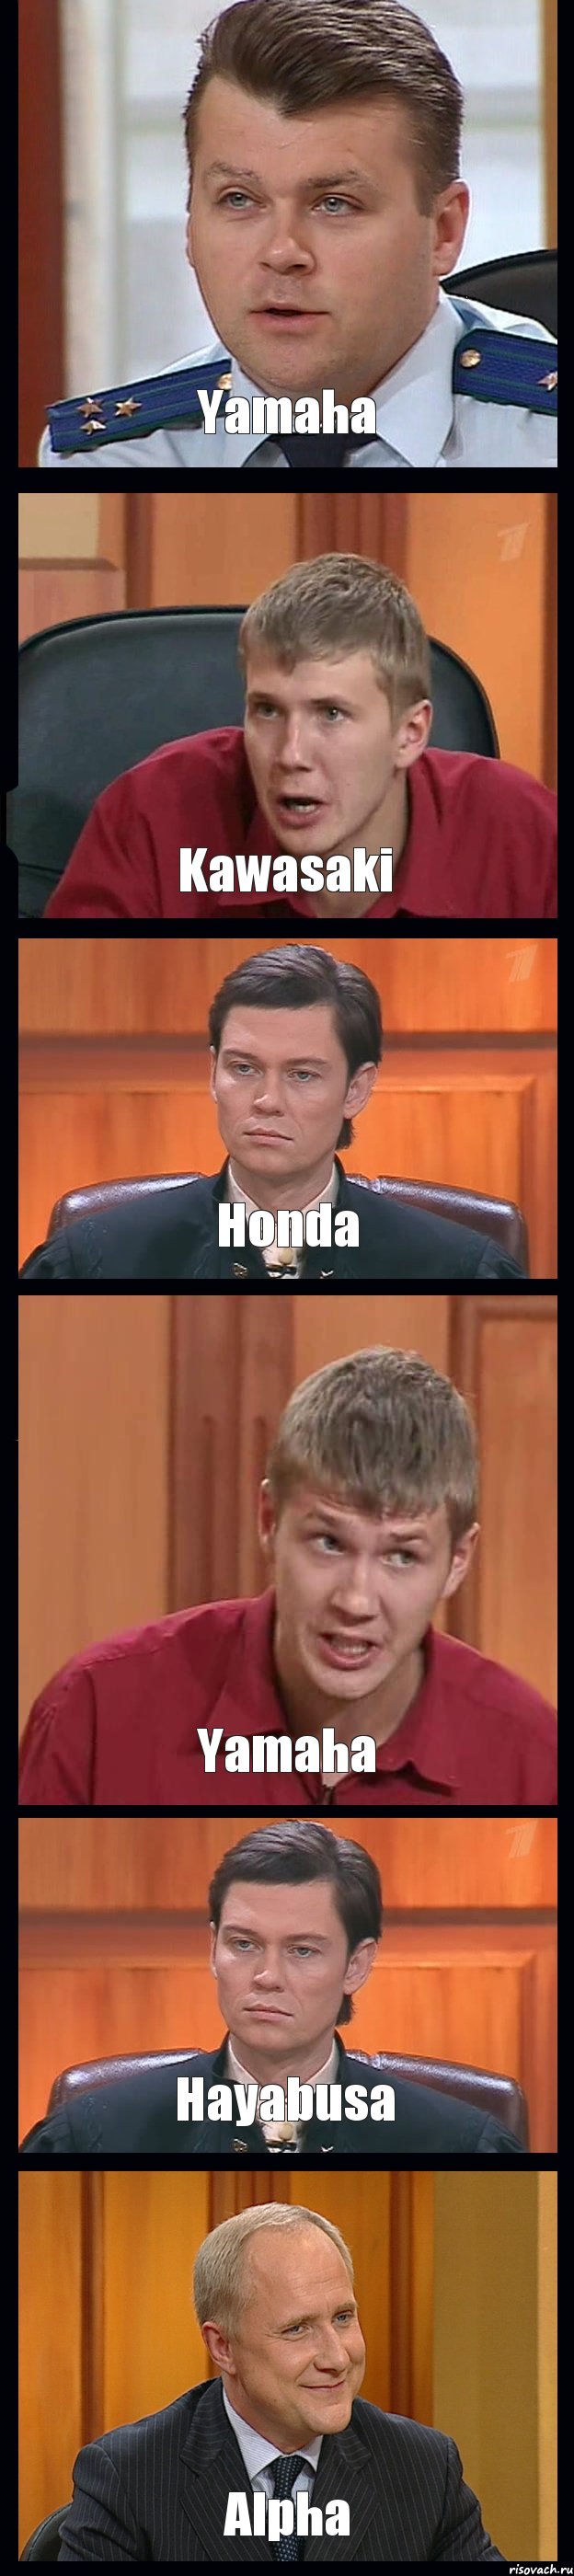 Yamaha Kawasaki Honda Yamaha Hayabusa Alpha, Комикс Федеральный судья